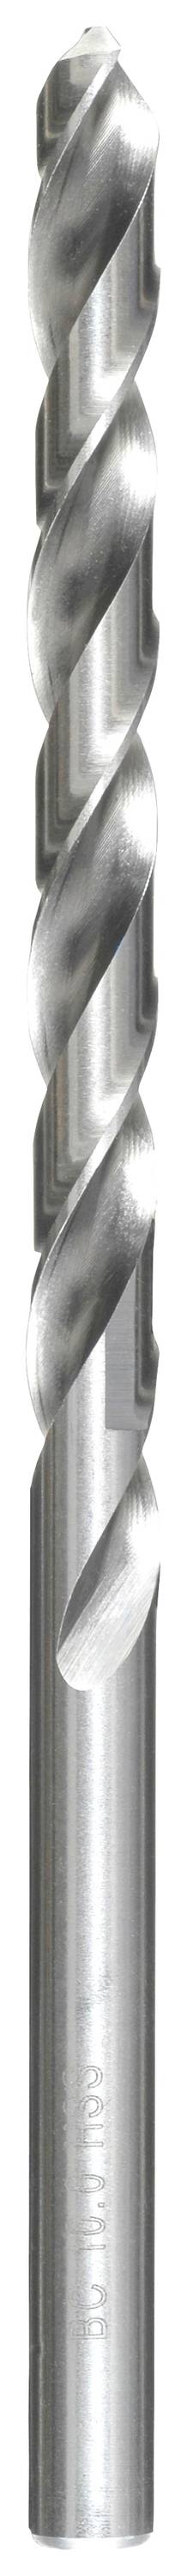 KWB 217045 HSS Spiralbohrer 1 Stück 4.5 mm Gesamtlänge 126 mm DIN 340 Zahnkranzbohrfutter 1 St.